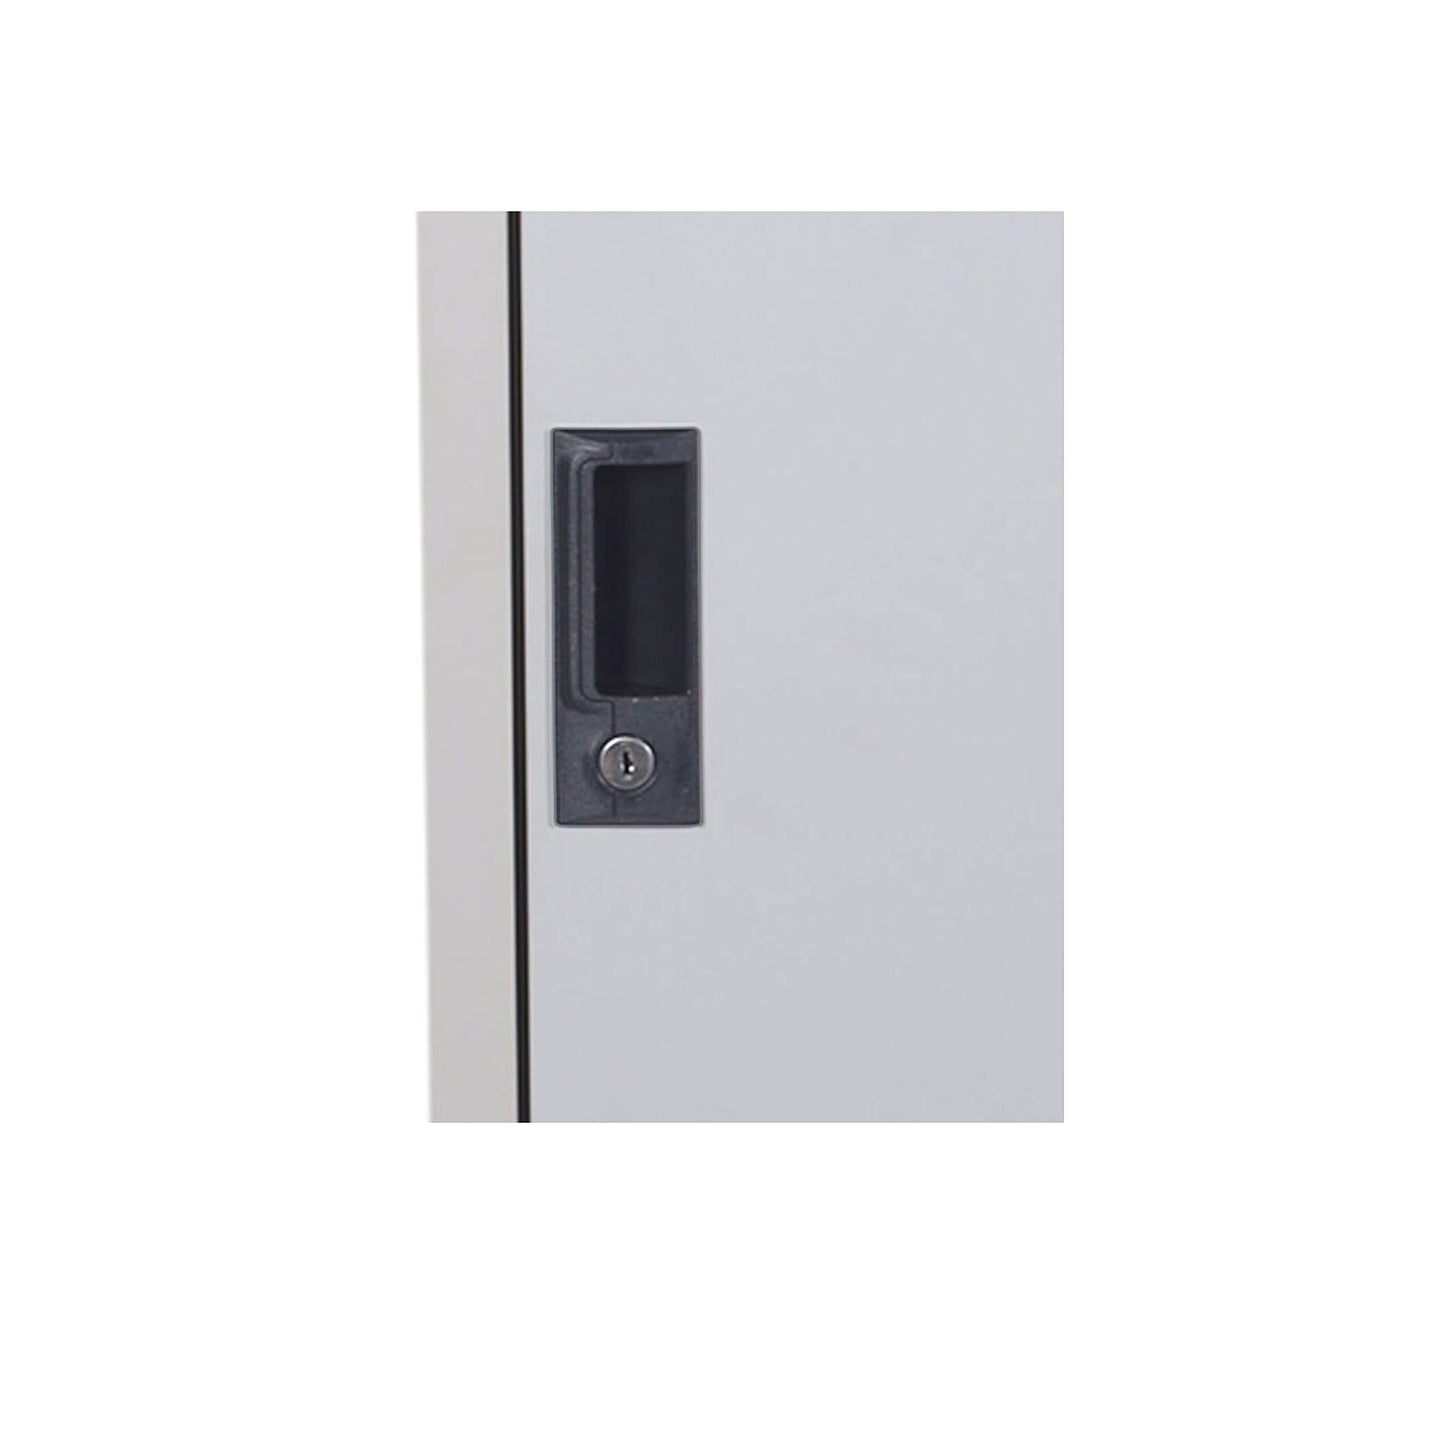 RIGID Double doors locker, Steel Metal Storage Locker- with 1 shelve - for Home & School & Office - Lock With plastic handle (Grey)